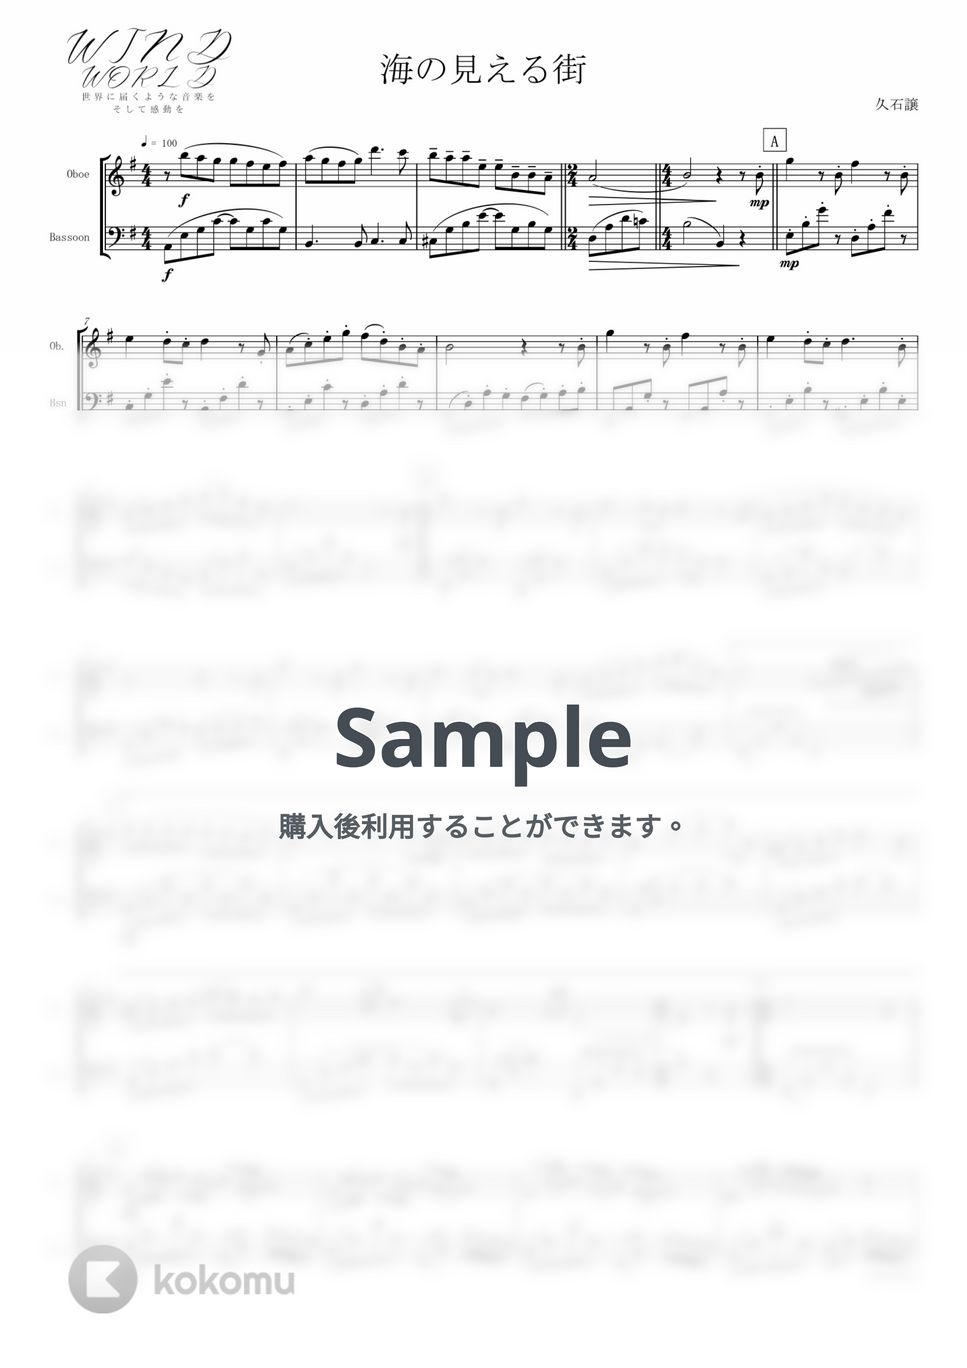 久石譲 - 海の見える街 (アンサンブル/Oboe.Bassoon) by Windworld